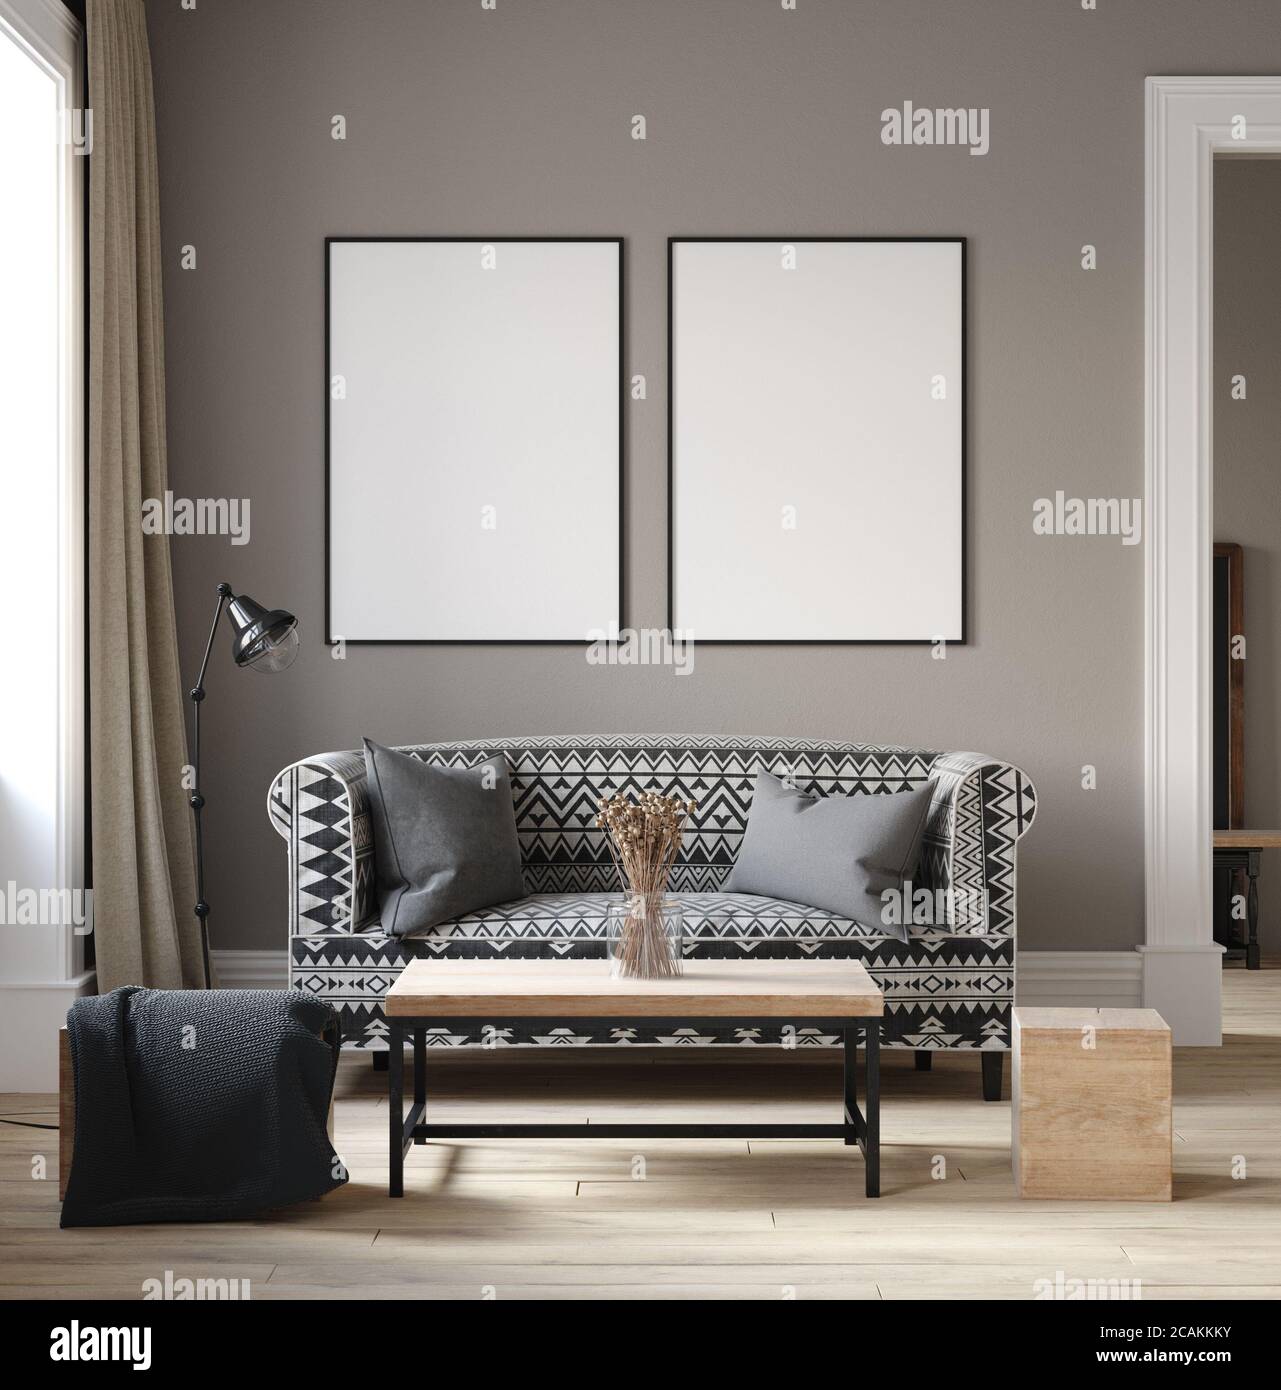 Interni in stile scandinavo con mobili etnici, rendering 3d Foto stock -  Alamy